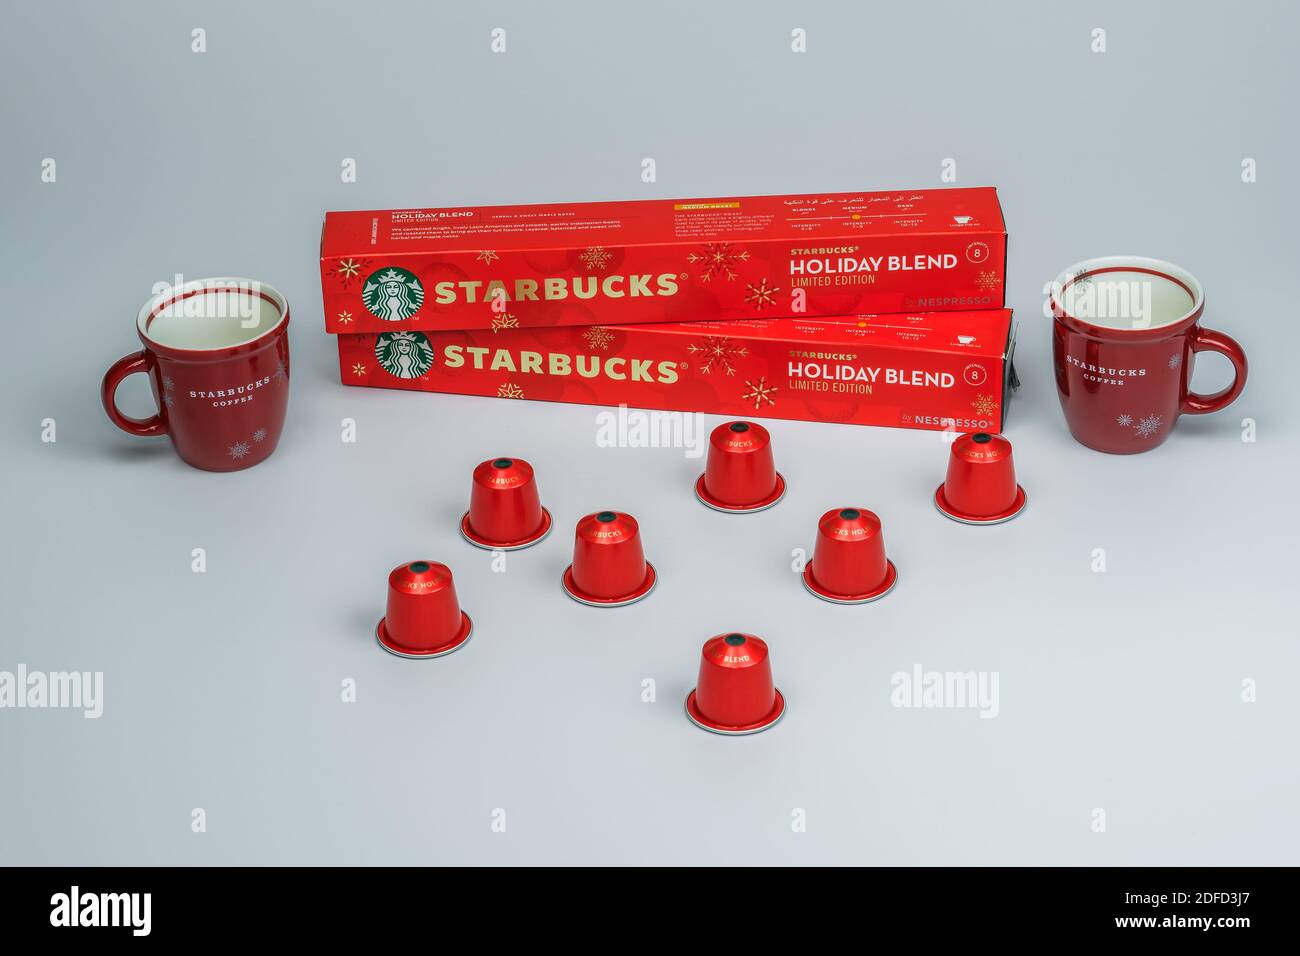 Starbucks Weihnachten Espresso Tassen neben Nespresso-Maschine. Vielzahl von  Marken Urlaub Tassen hinter Aluminium-Kapseln verwendet, um tropfenden  Kaffee zu machen Stockfotografie - Alamy